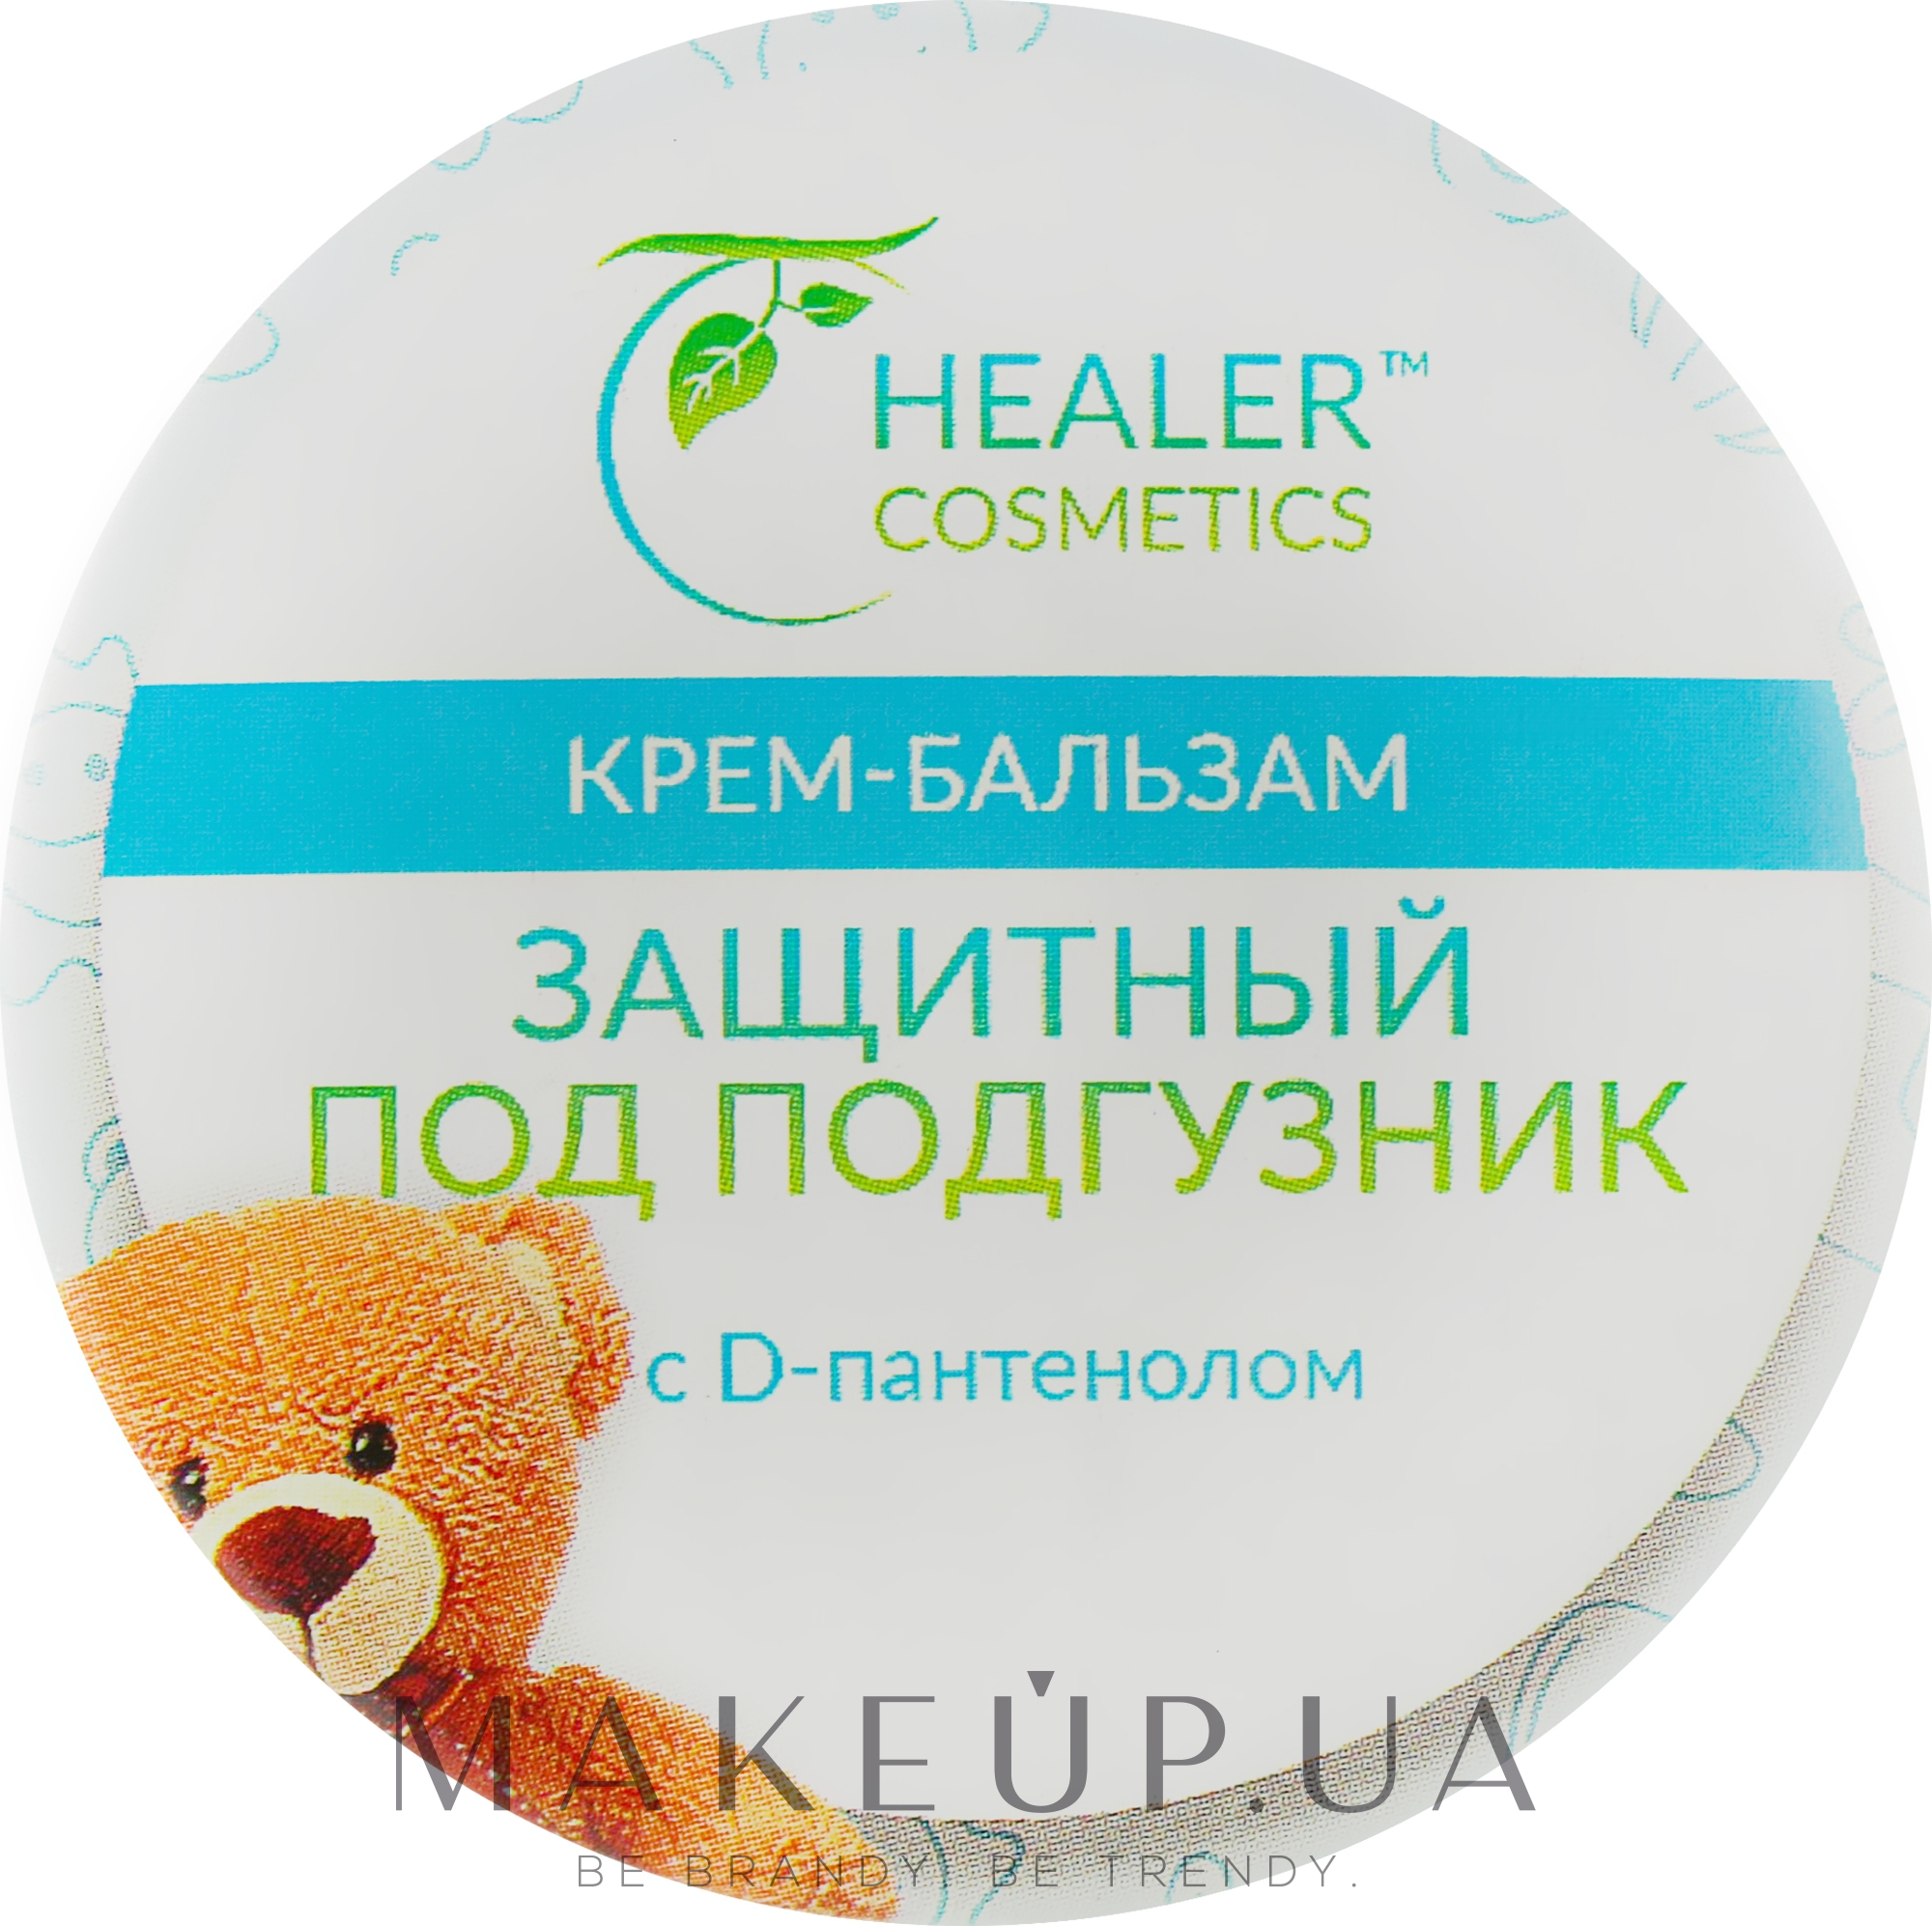 Крем-бальзам "Защитный" под подгузник с D-пантенолом - Healer Cosmetics — фото 10g